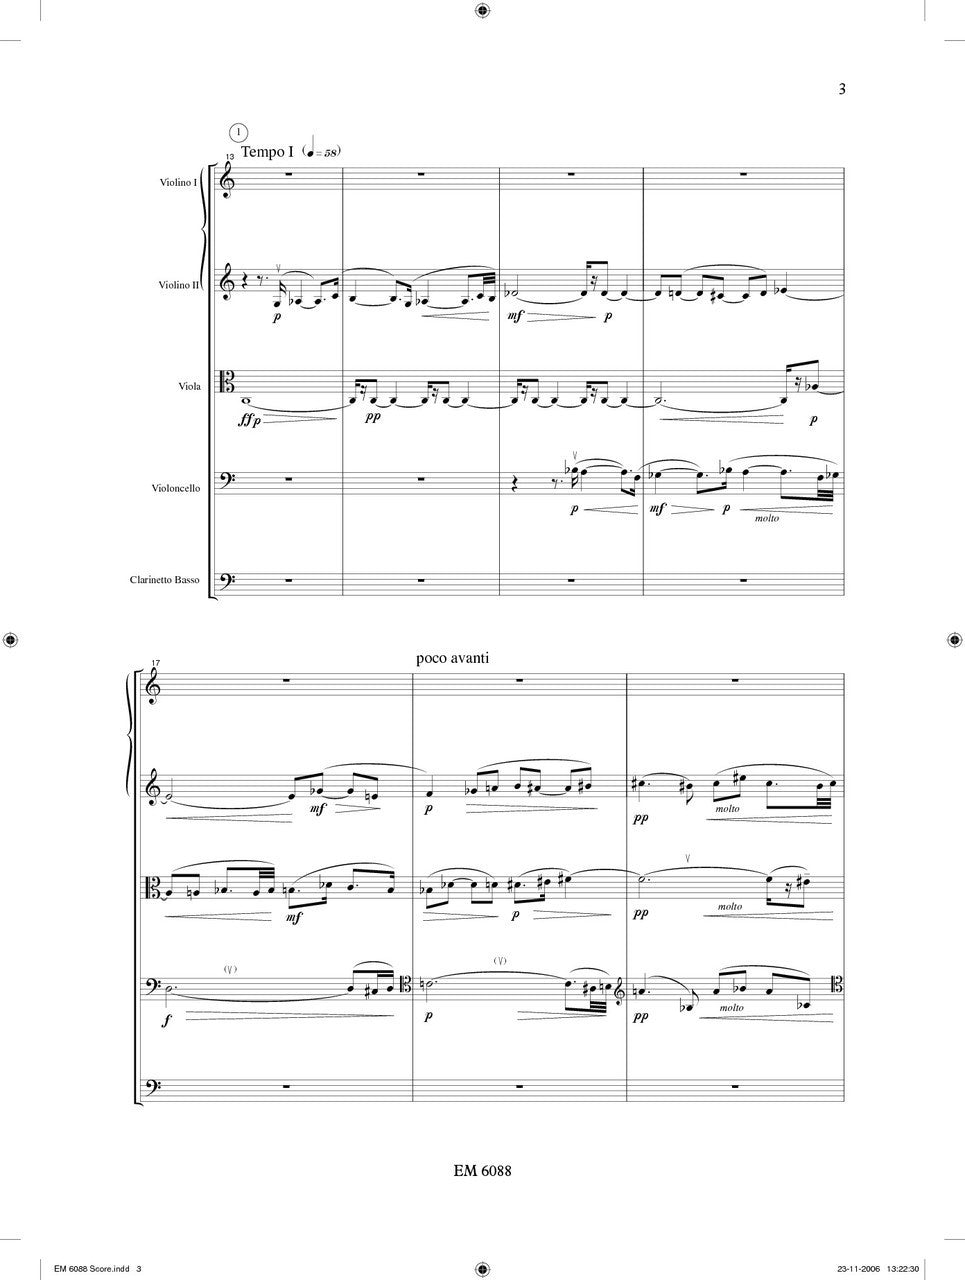 Celis - Da uno a cinque, Op.27 for Bass Clarinet and String Quartet